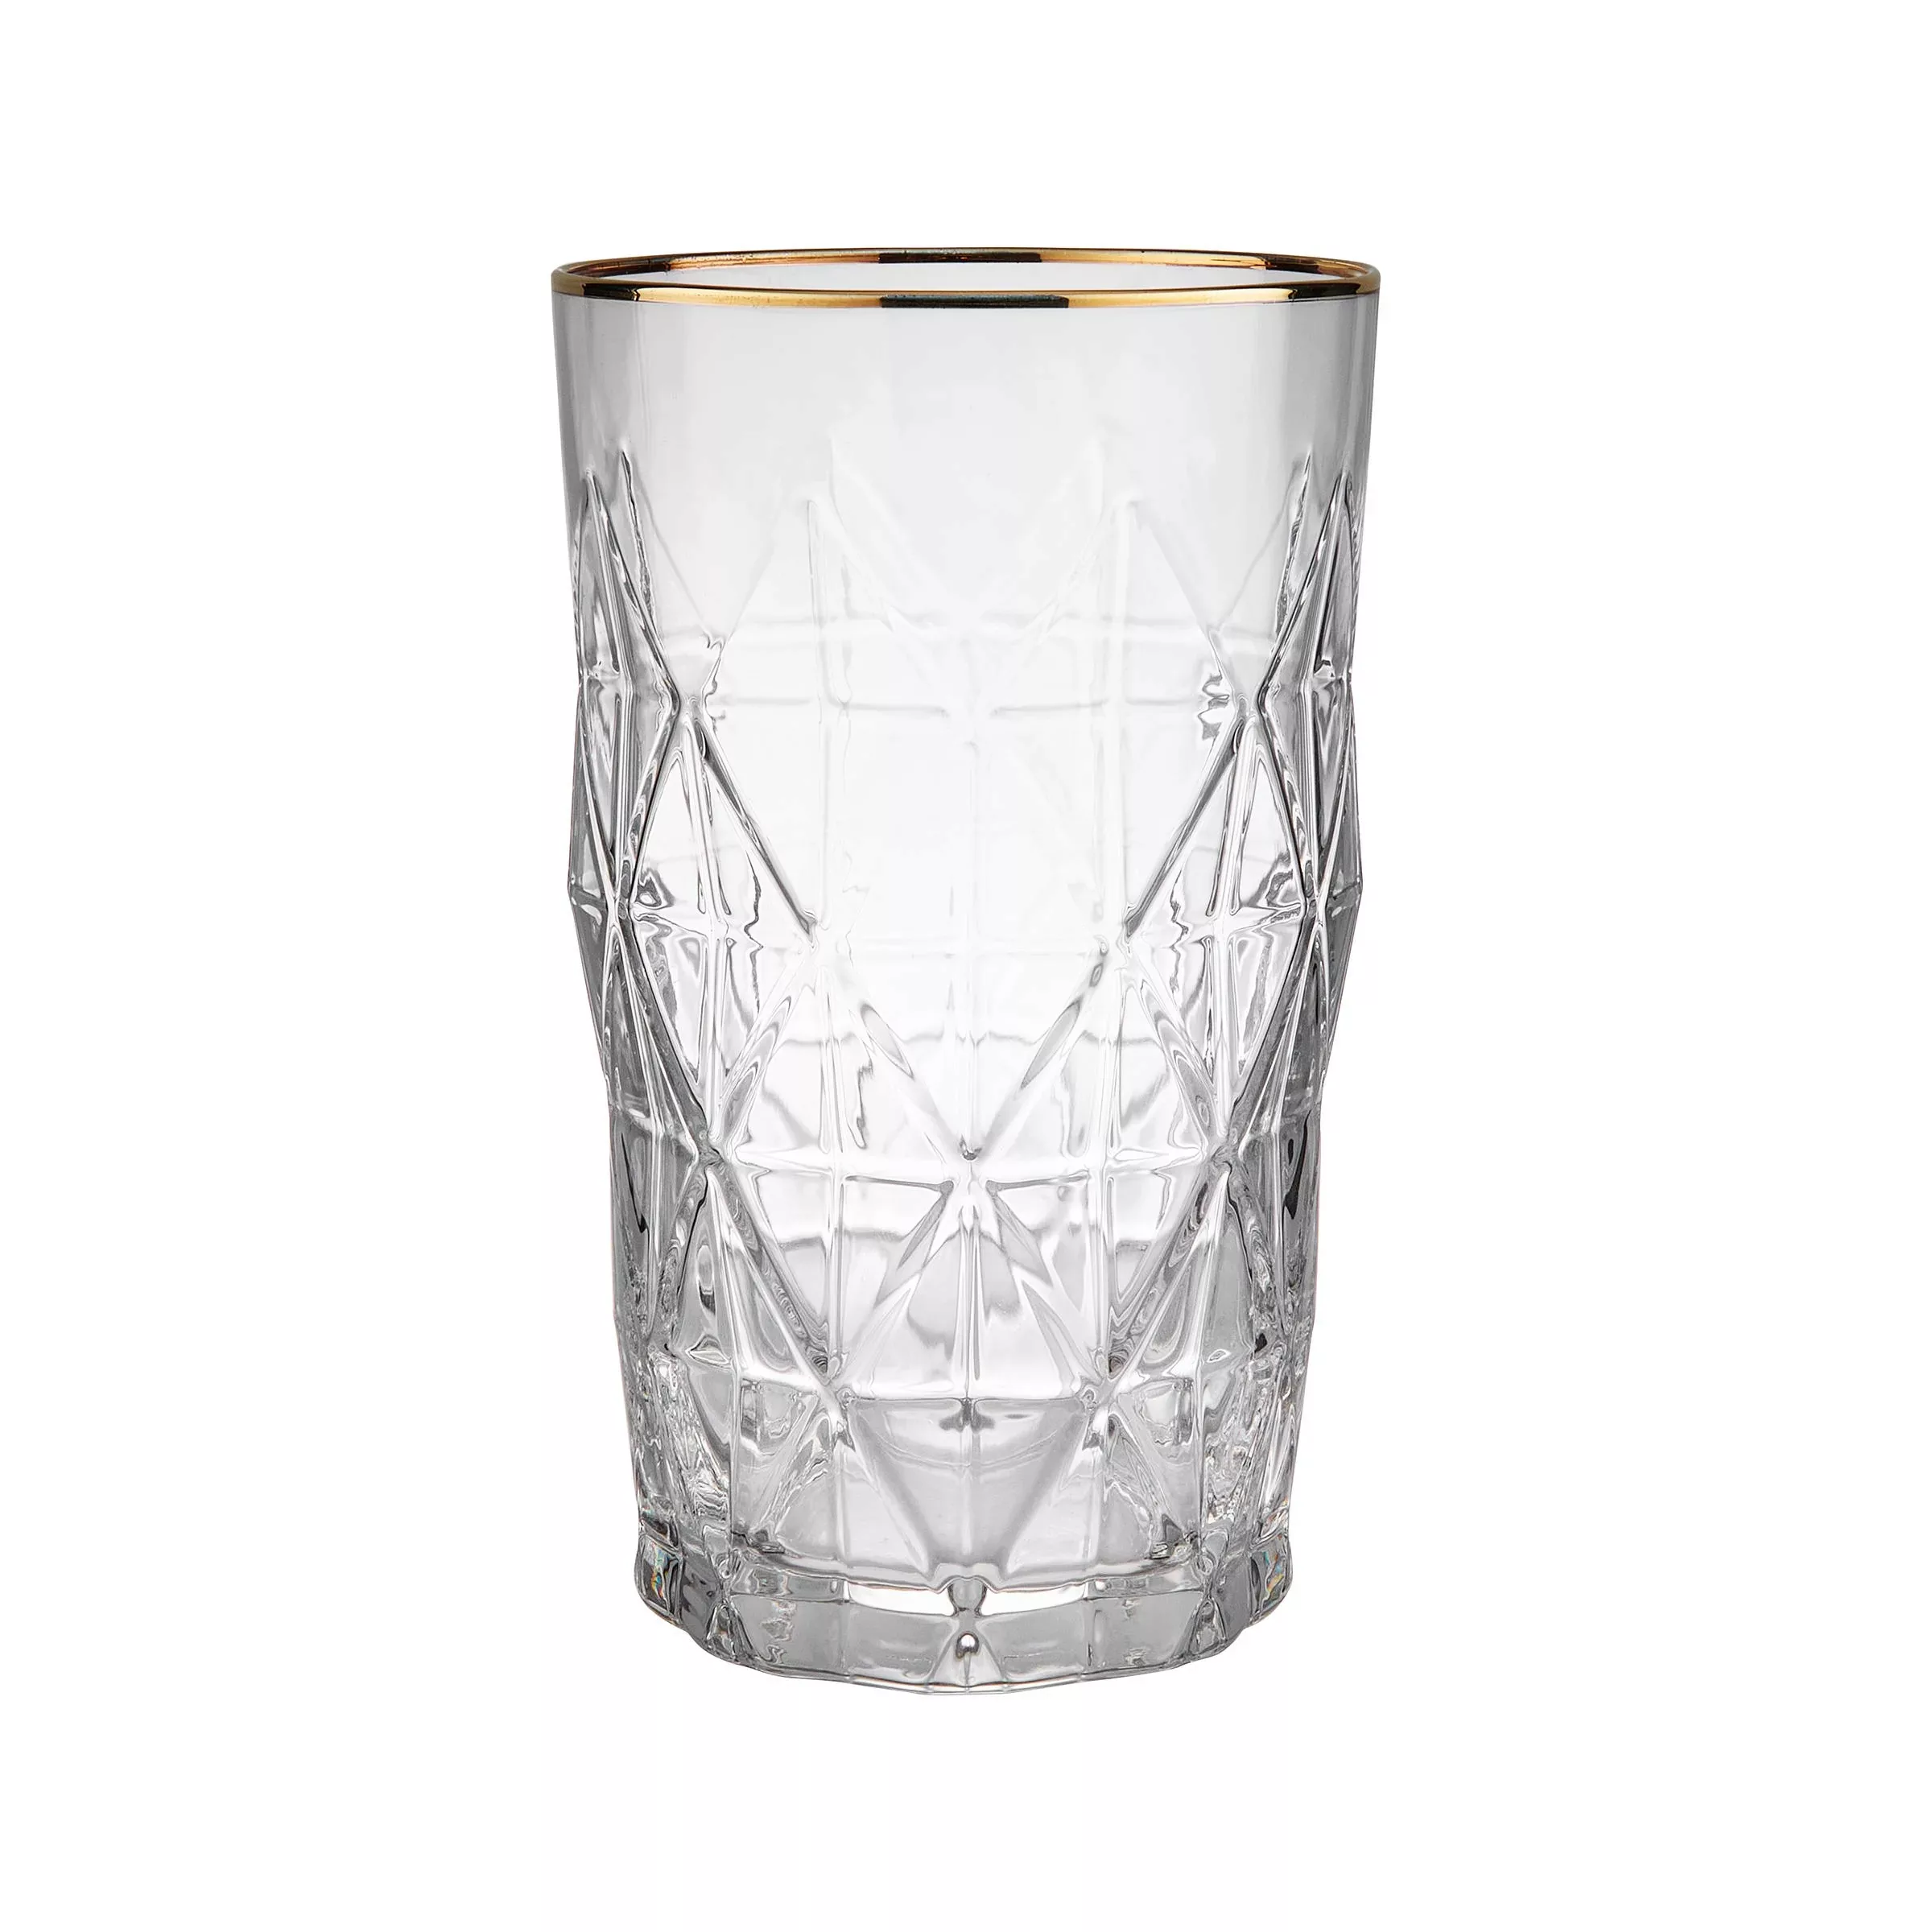 UPSCALE Longdrinkglas mit Goldrand 460ml günstig online kaufen